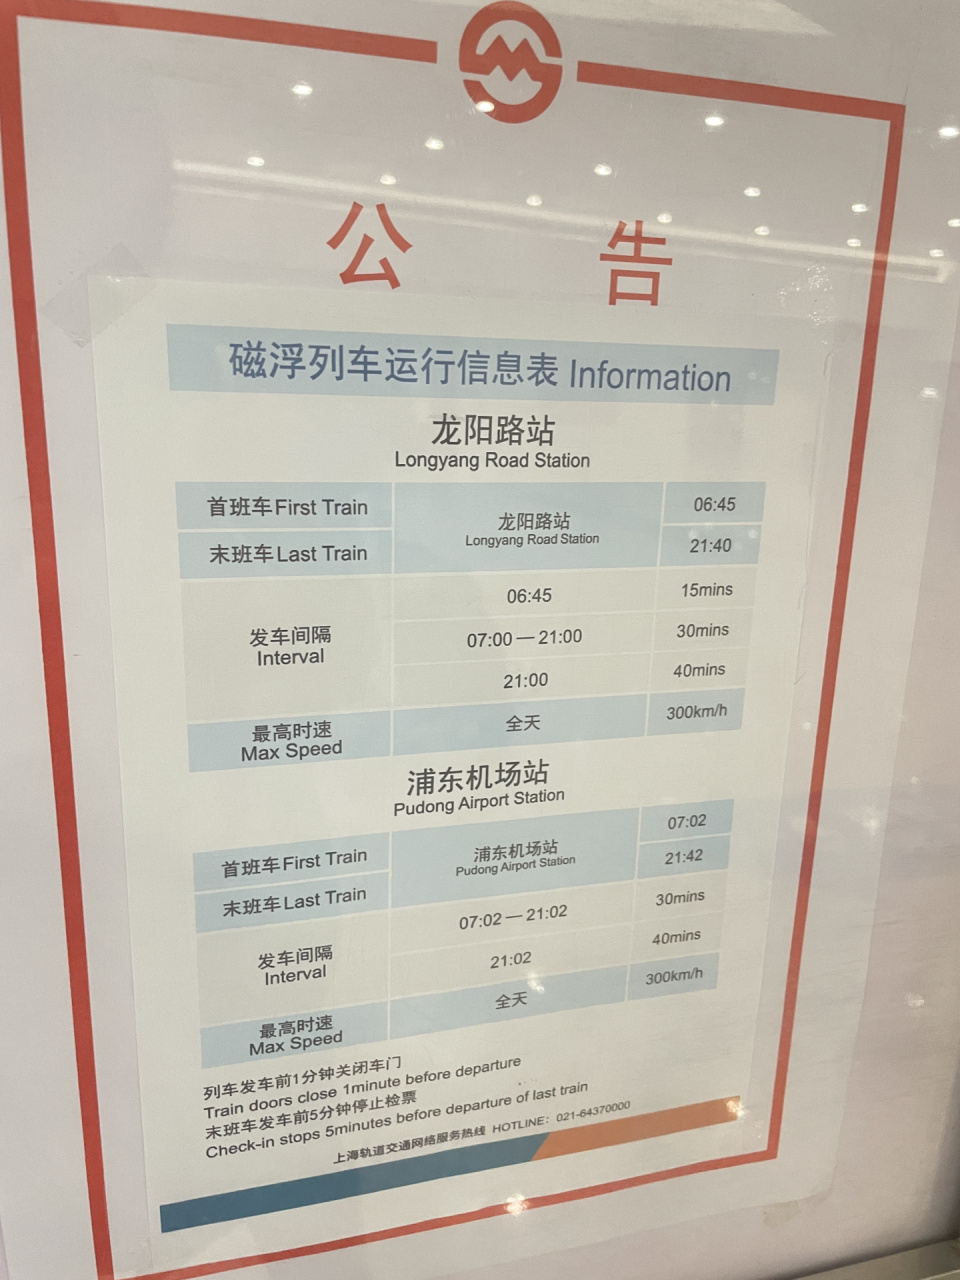 上海浦东机场磁悬浮列车时刻表 需要记得收藏备用哦